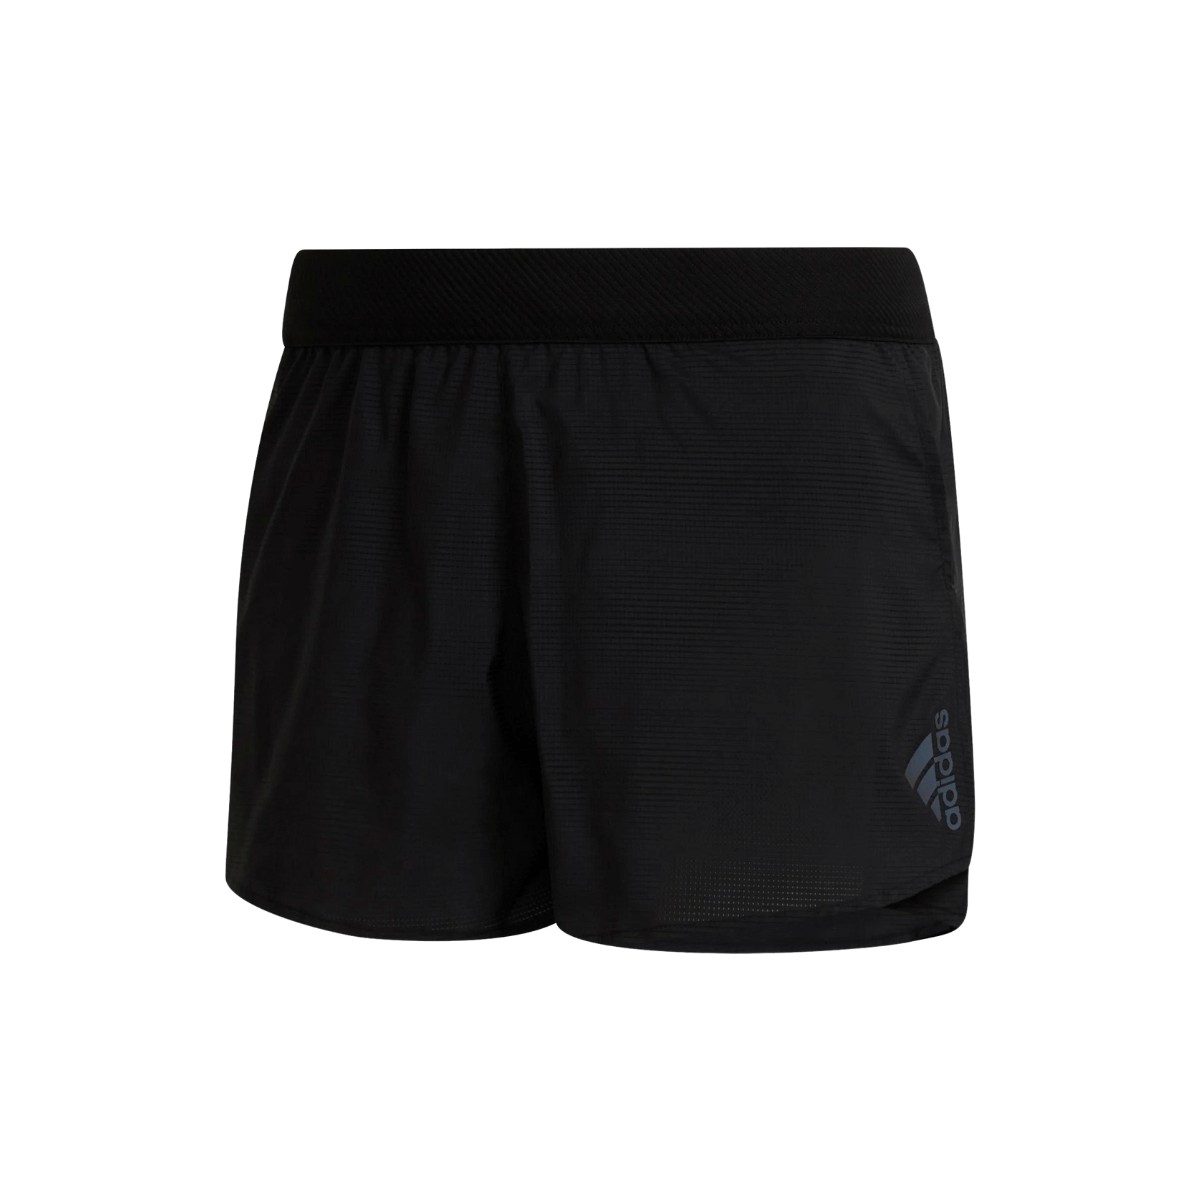 Adidas Adizero Engineered Split Shorts Black, Size XS